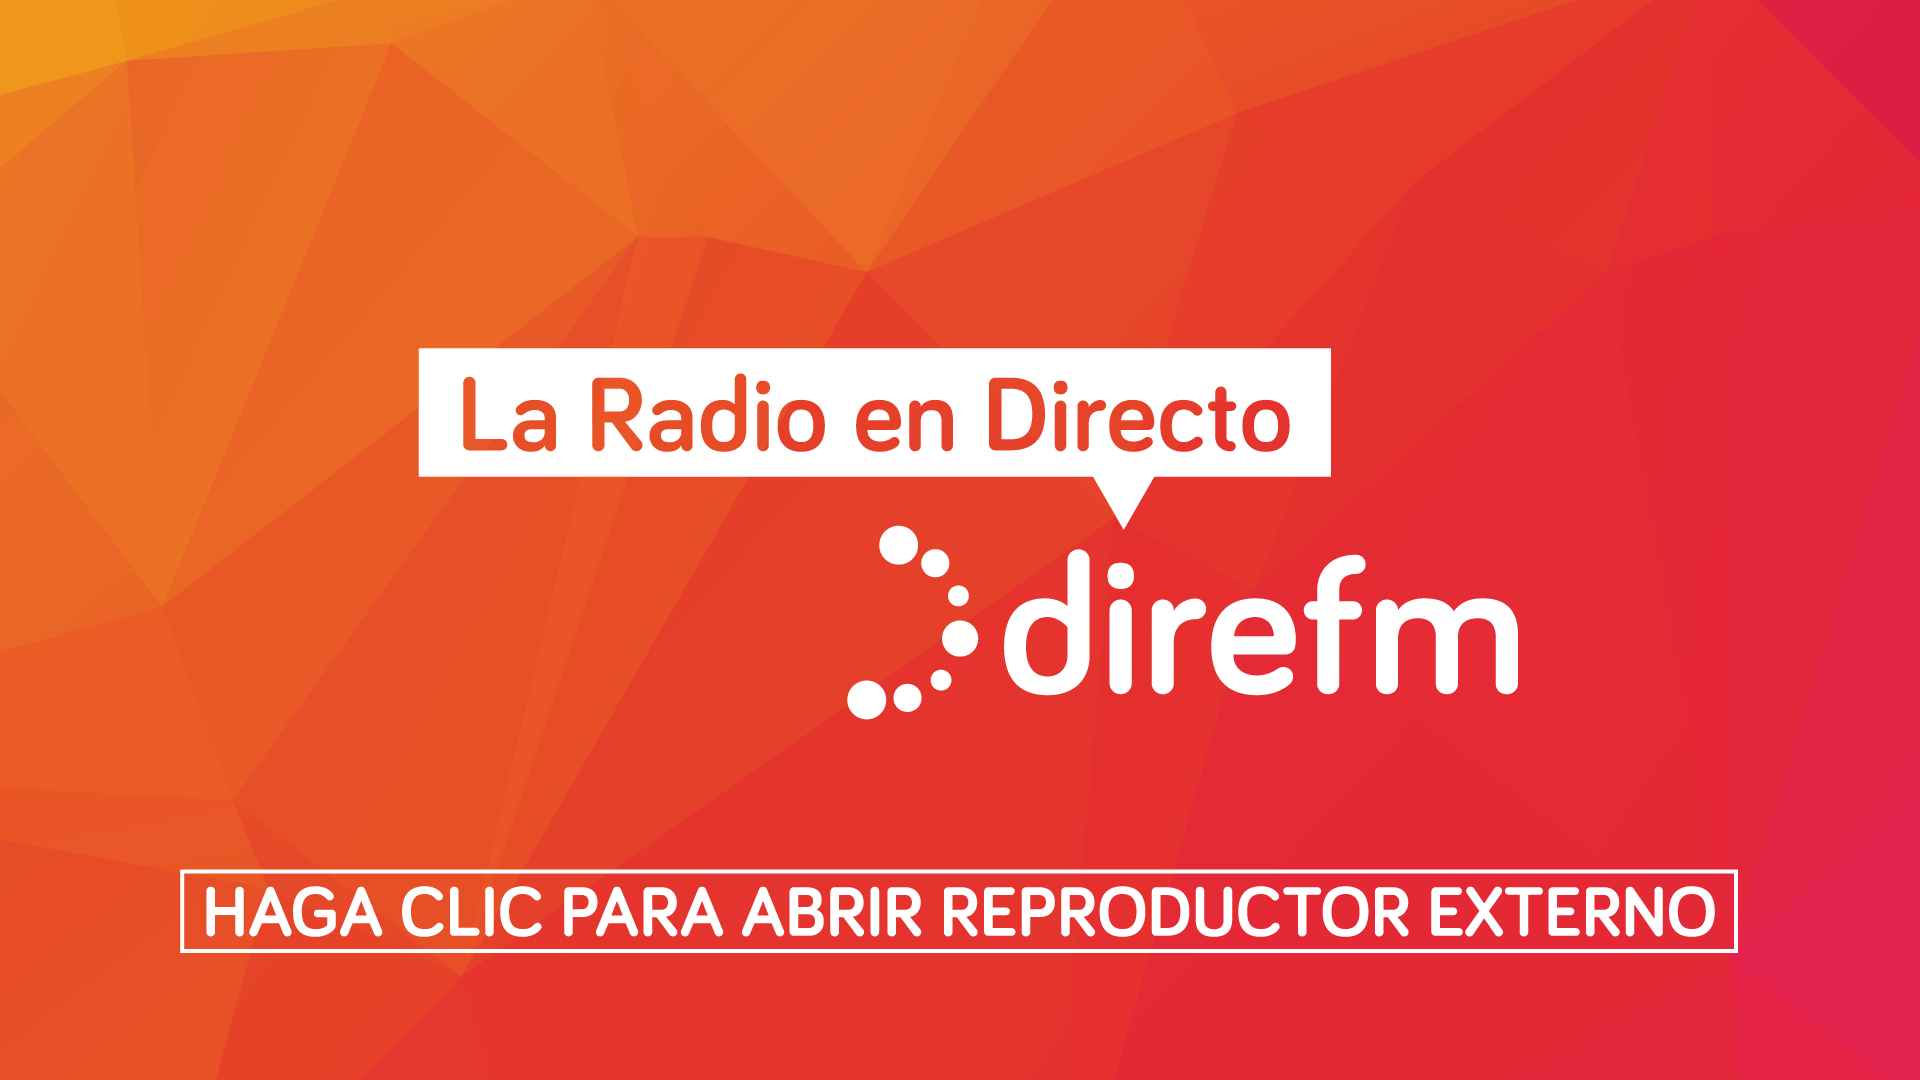 Radio Pública de Ceuta en directo, Online
